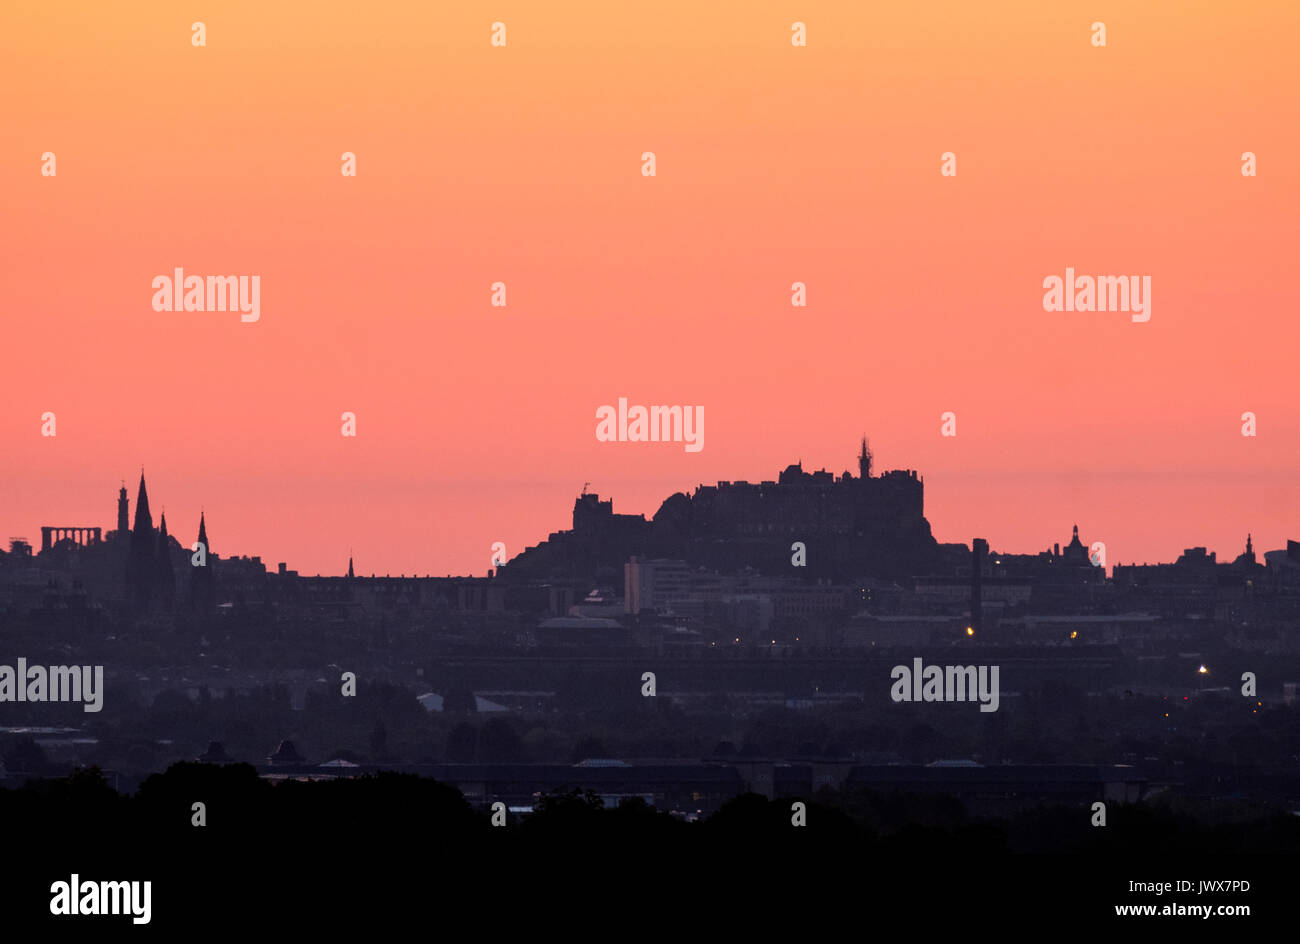 Das Edinburgh Castle und die Skyline von Edinburgh im Morgengrauen auf der Suche von West Lothian gesehen. Stockfoto